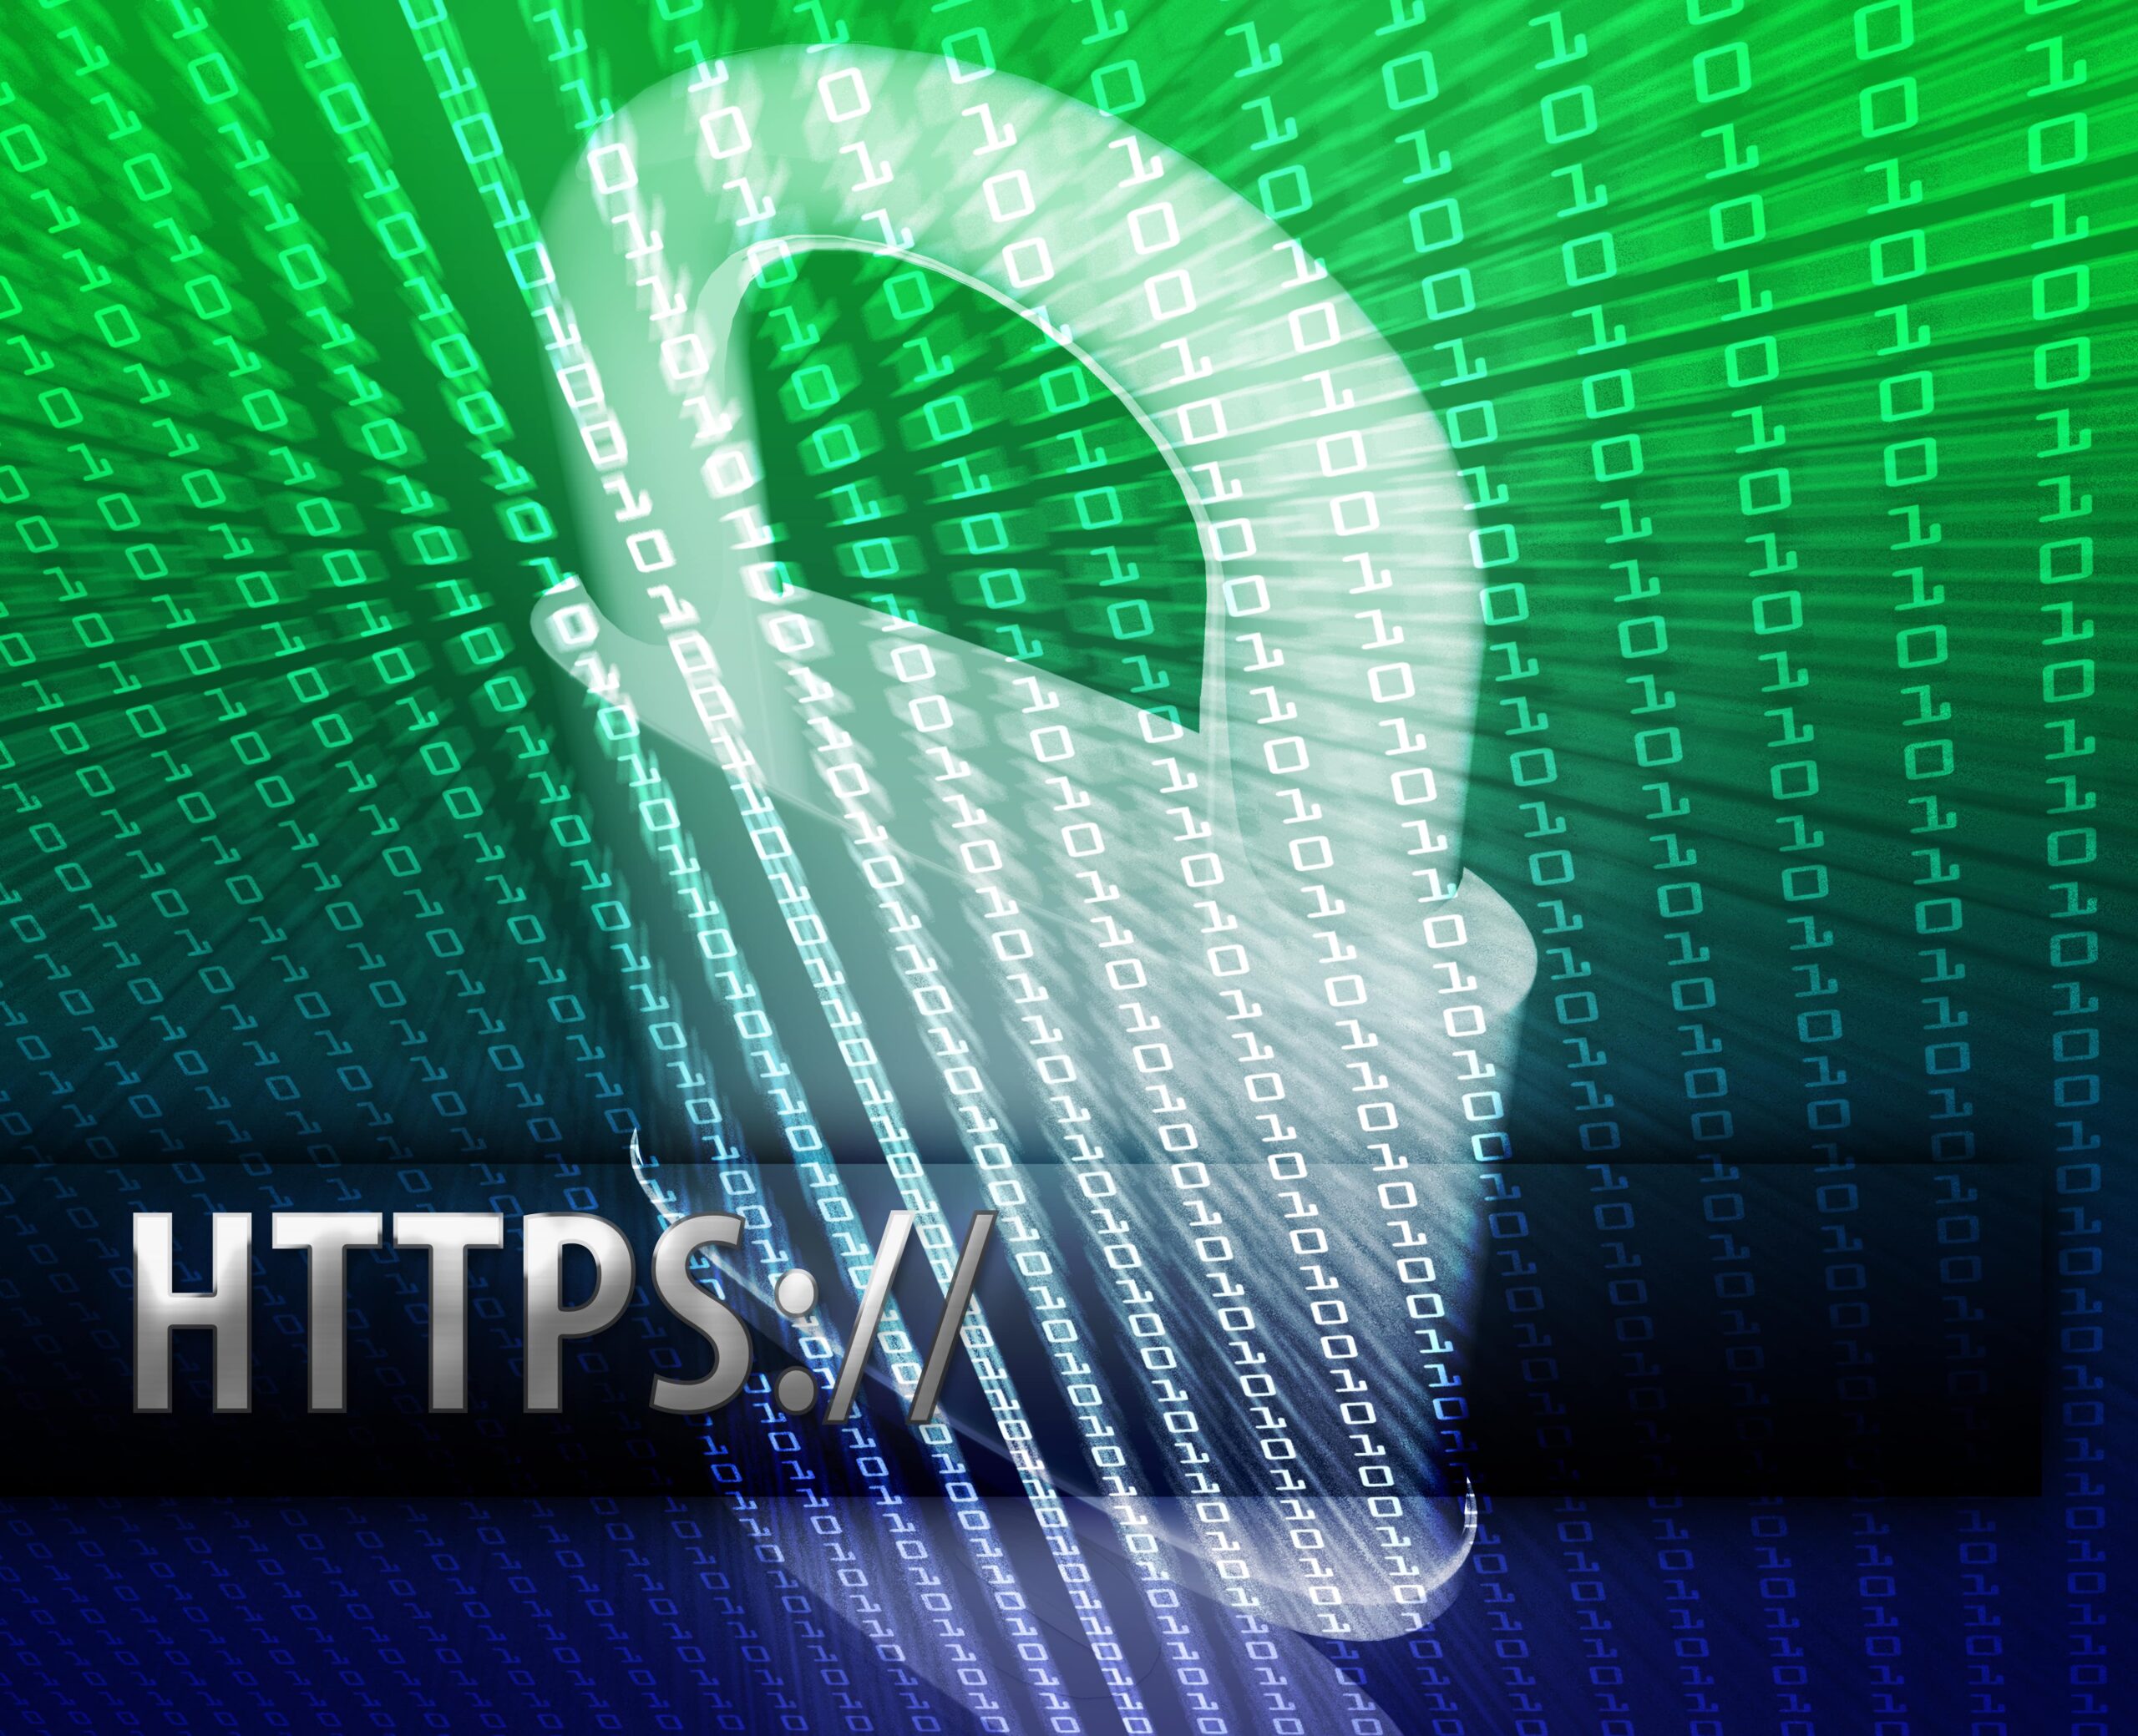 SSL Certificate Website Security